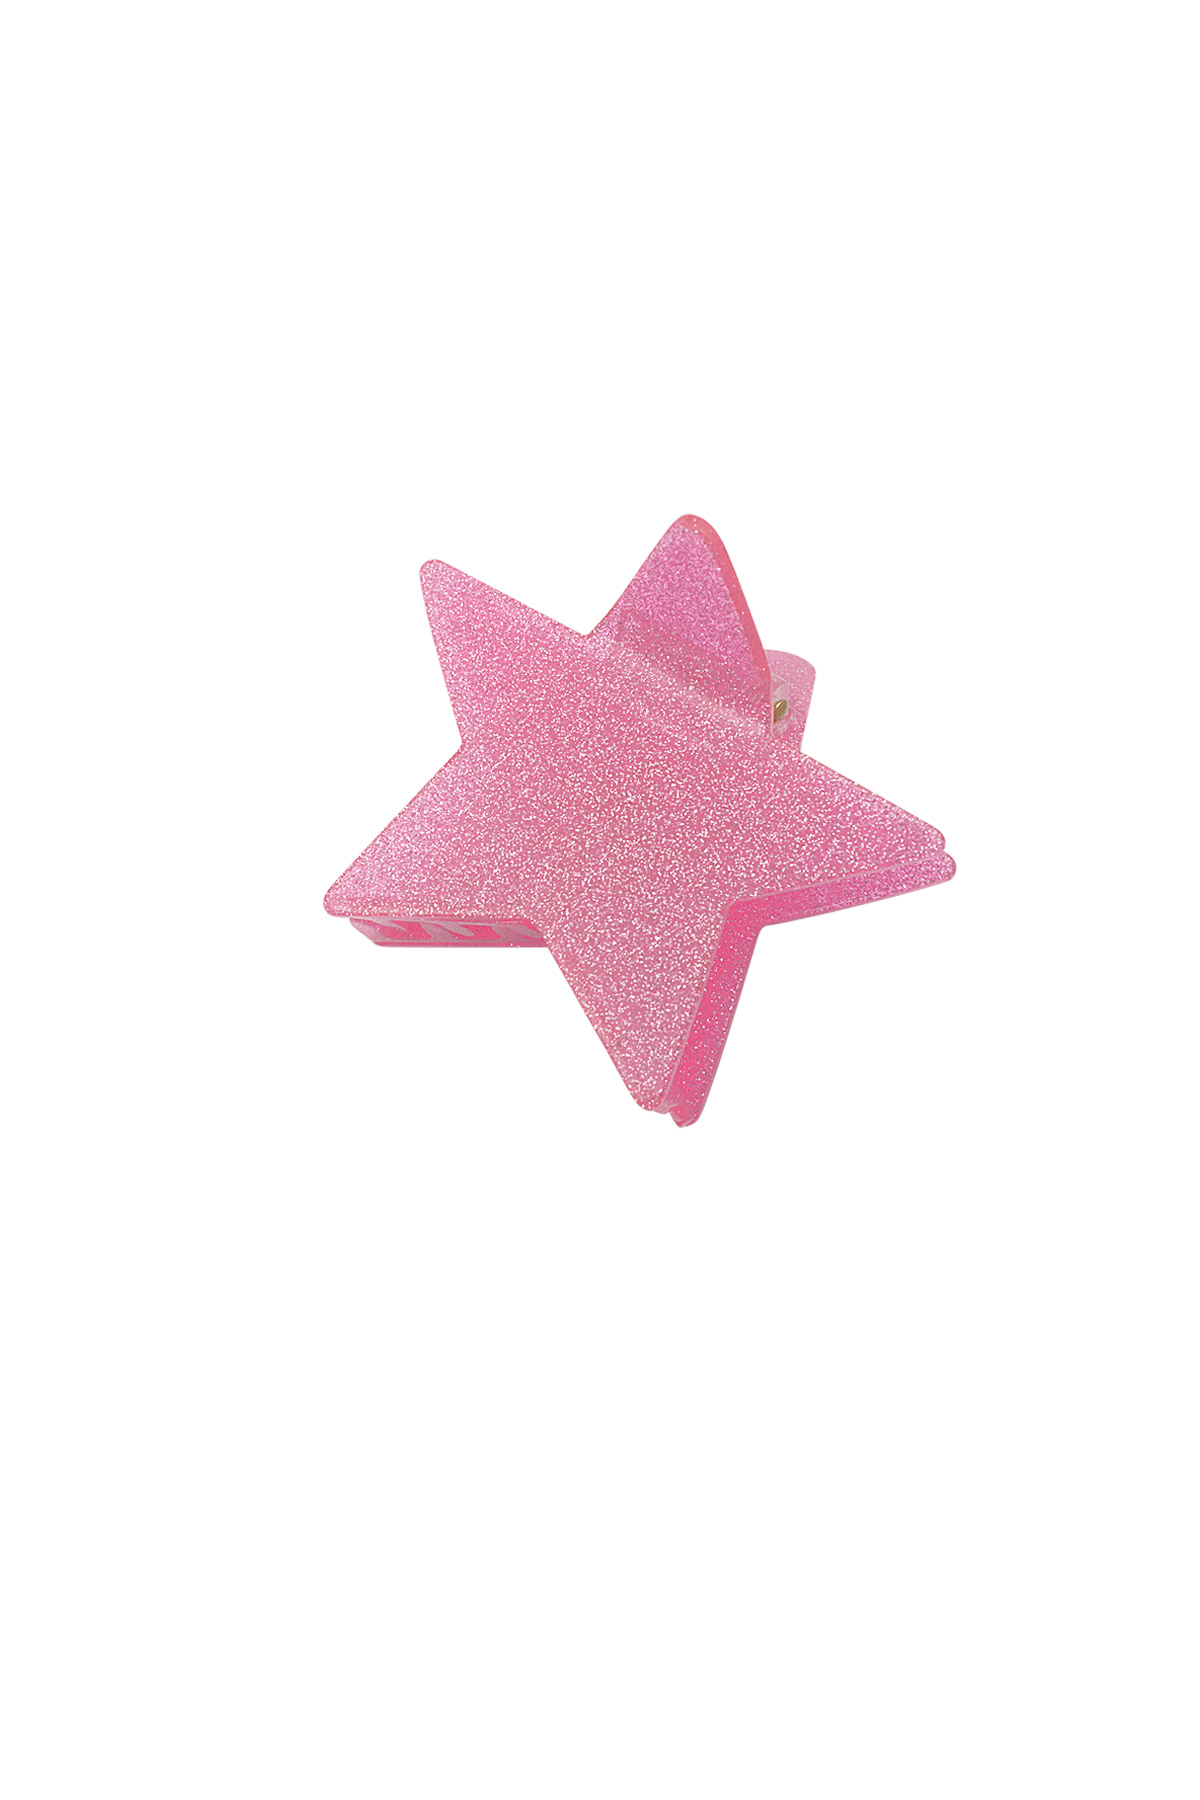 Haarspange leuchtender Stern - rosa